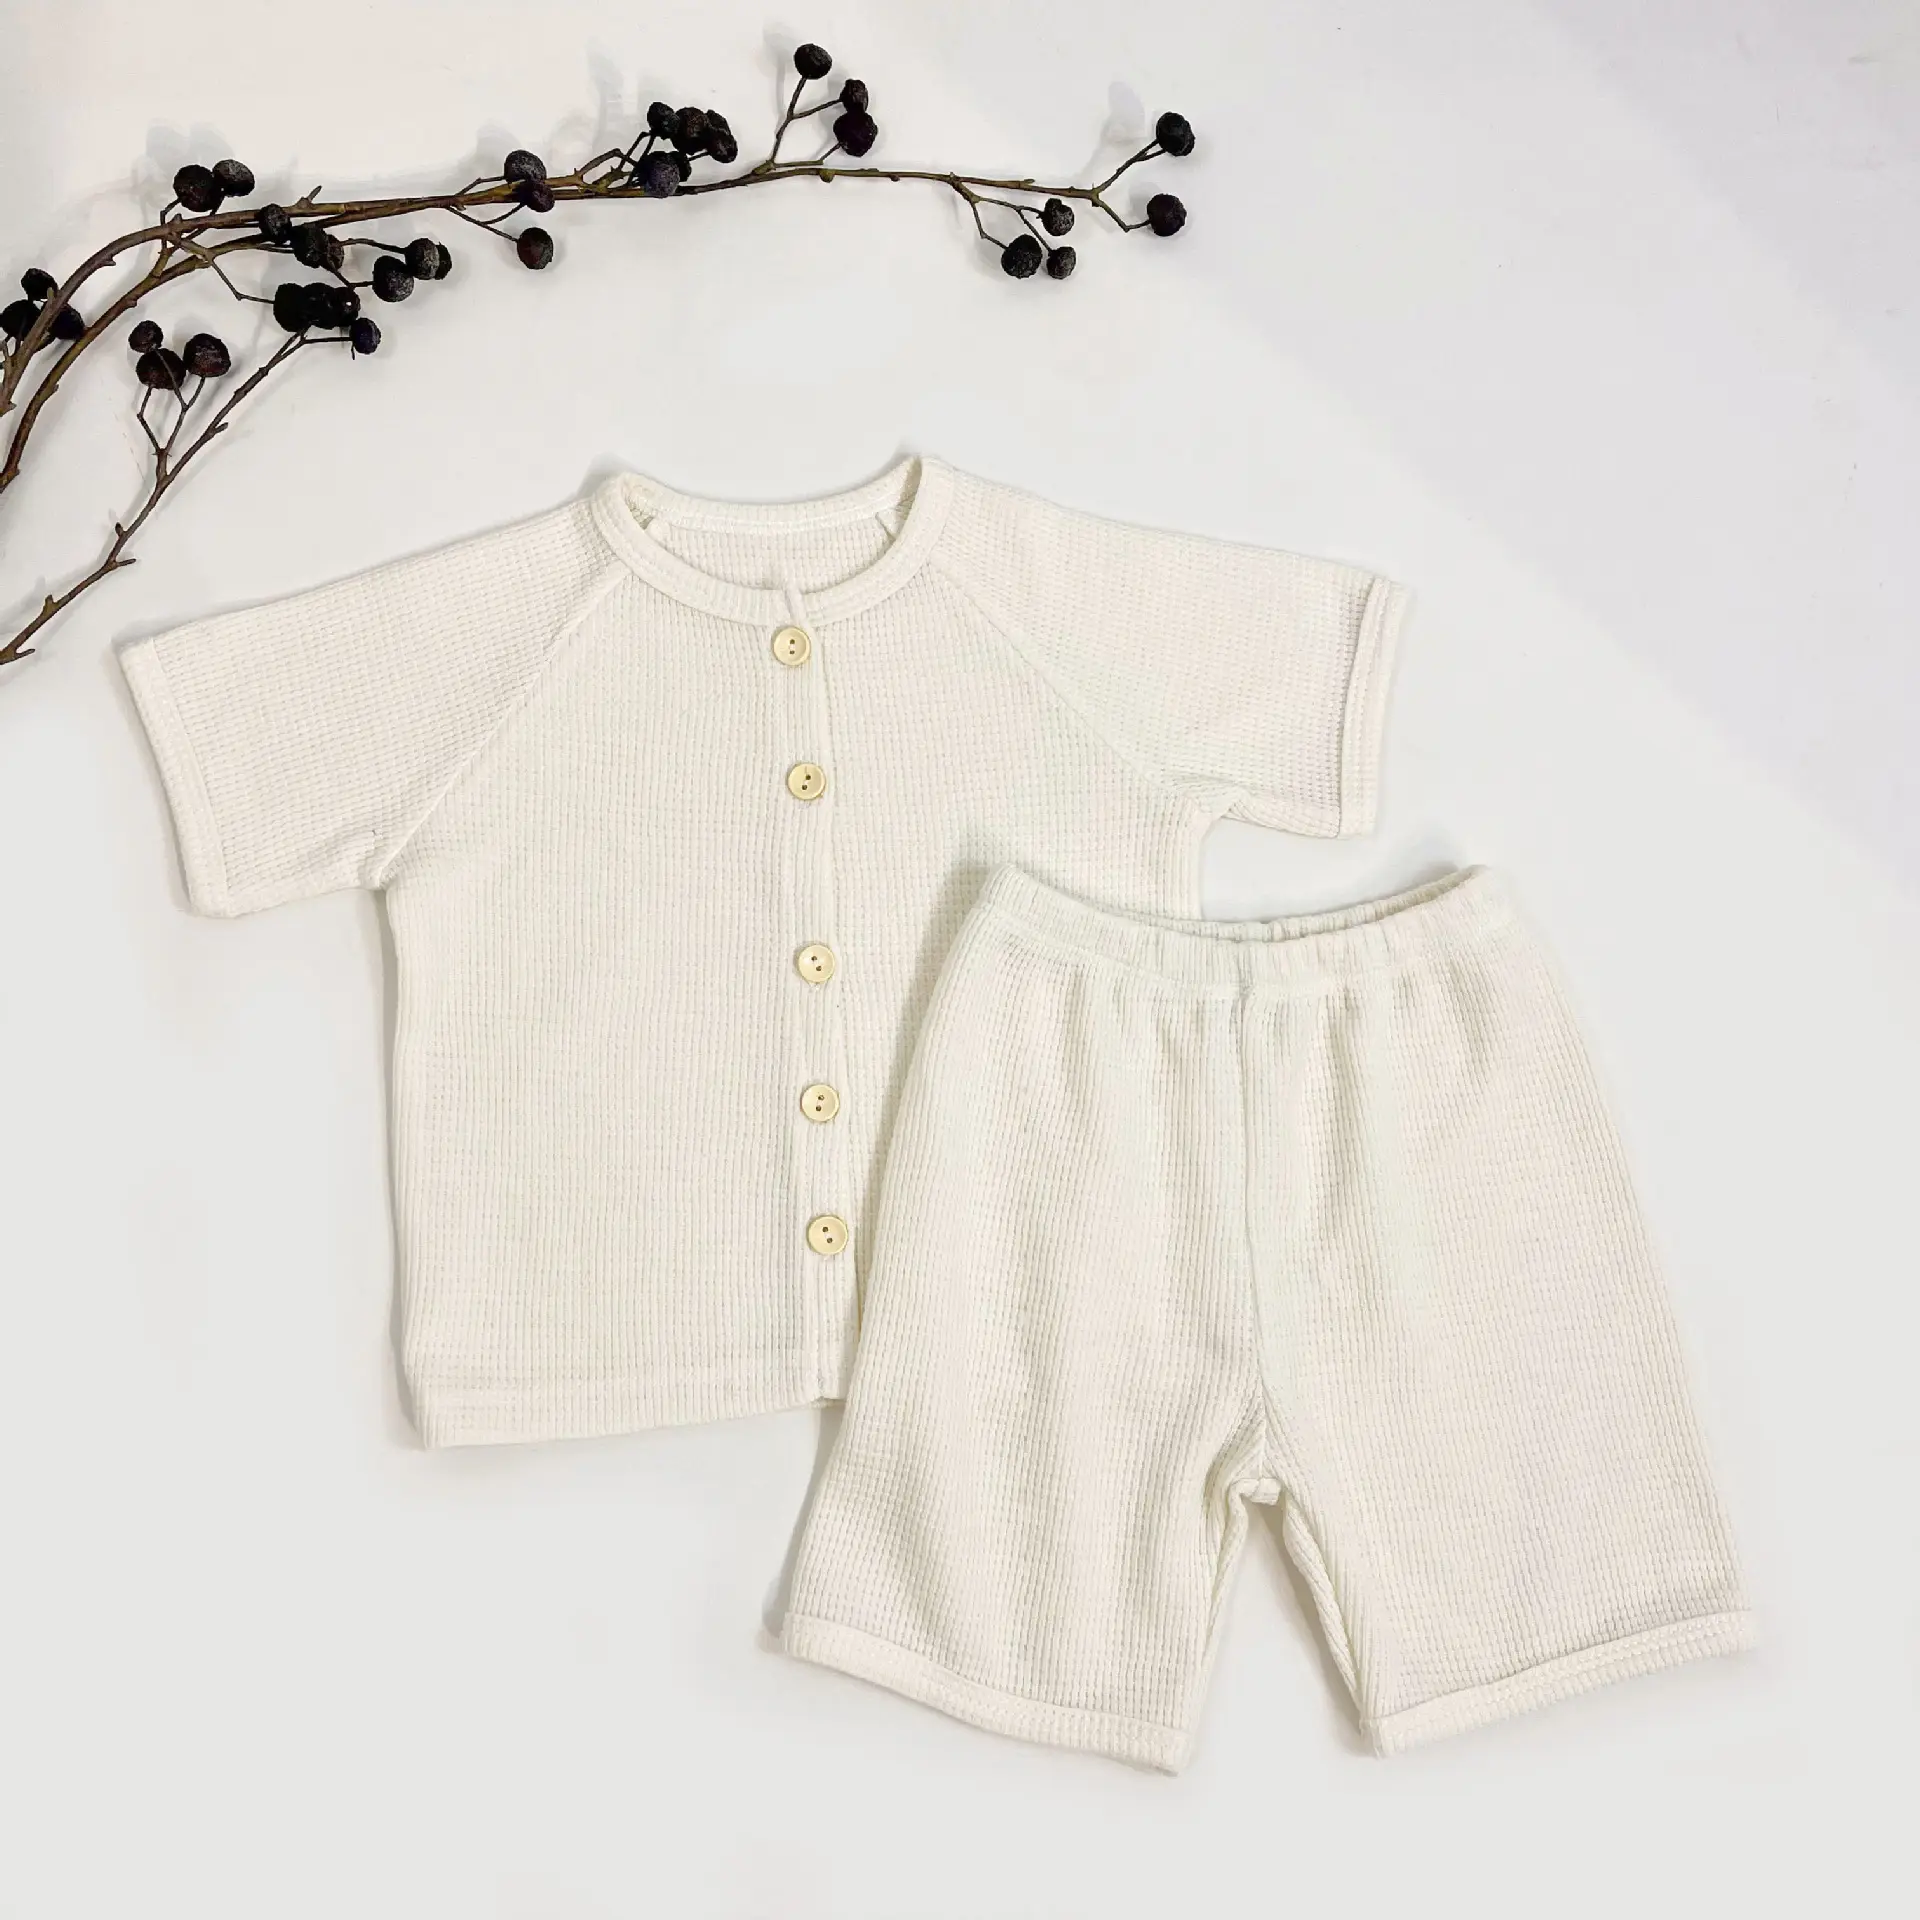 여름 아기 와플 잠옷 새로운 아기 의류 반팔 티셔츠 어린이 홈웨어 의류 세트 아기 잠옷 잠옷